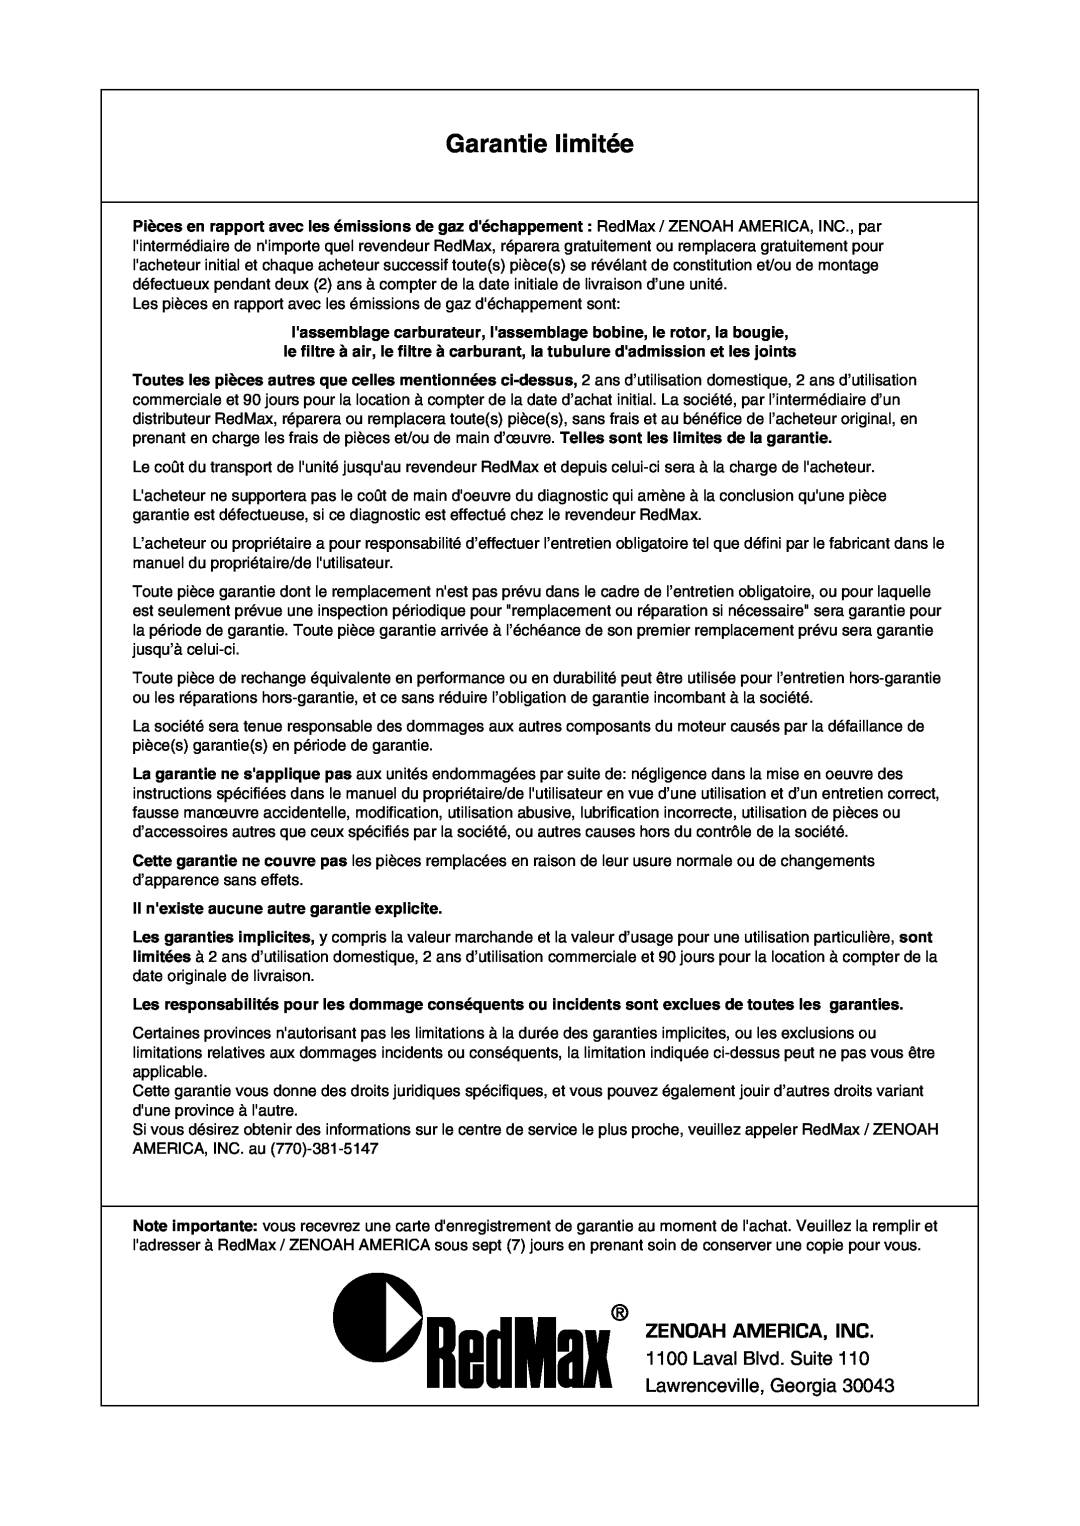 Univex SRTZ2401-CA manual Garantie limitée, Zenoah America, Inc, Il nexiste aucune autre garantie explicite 